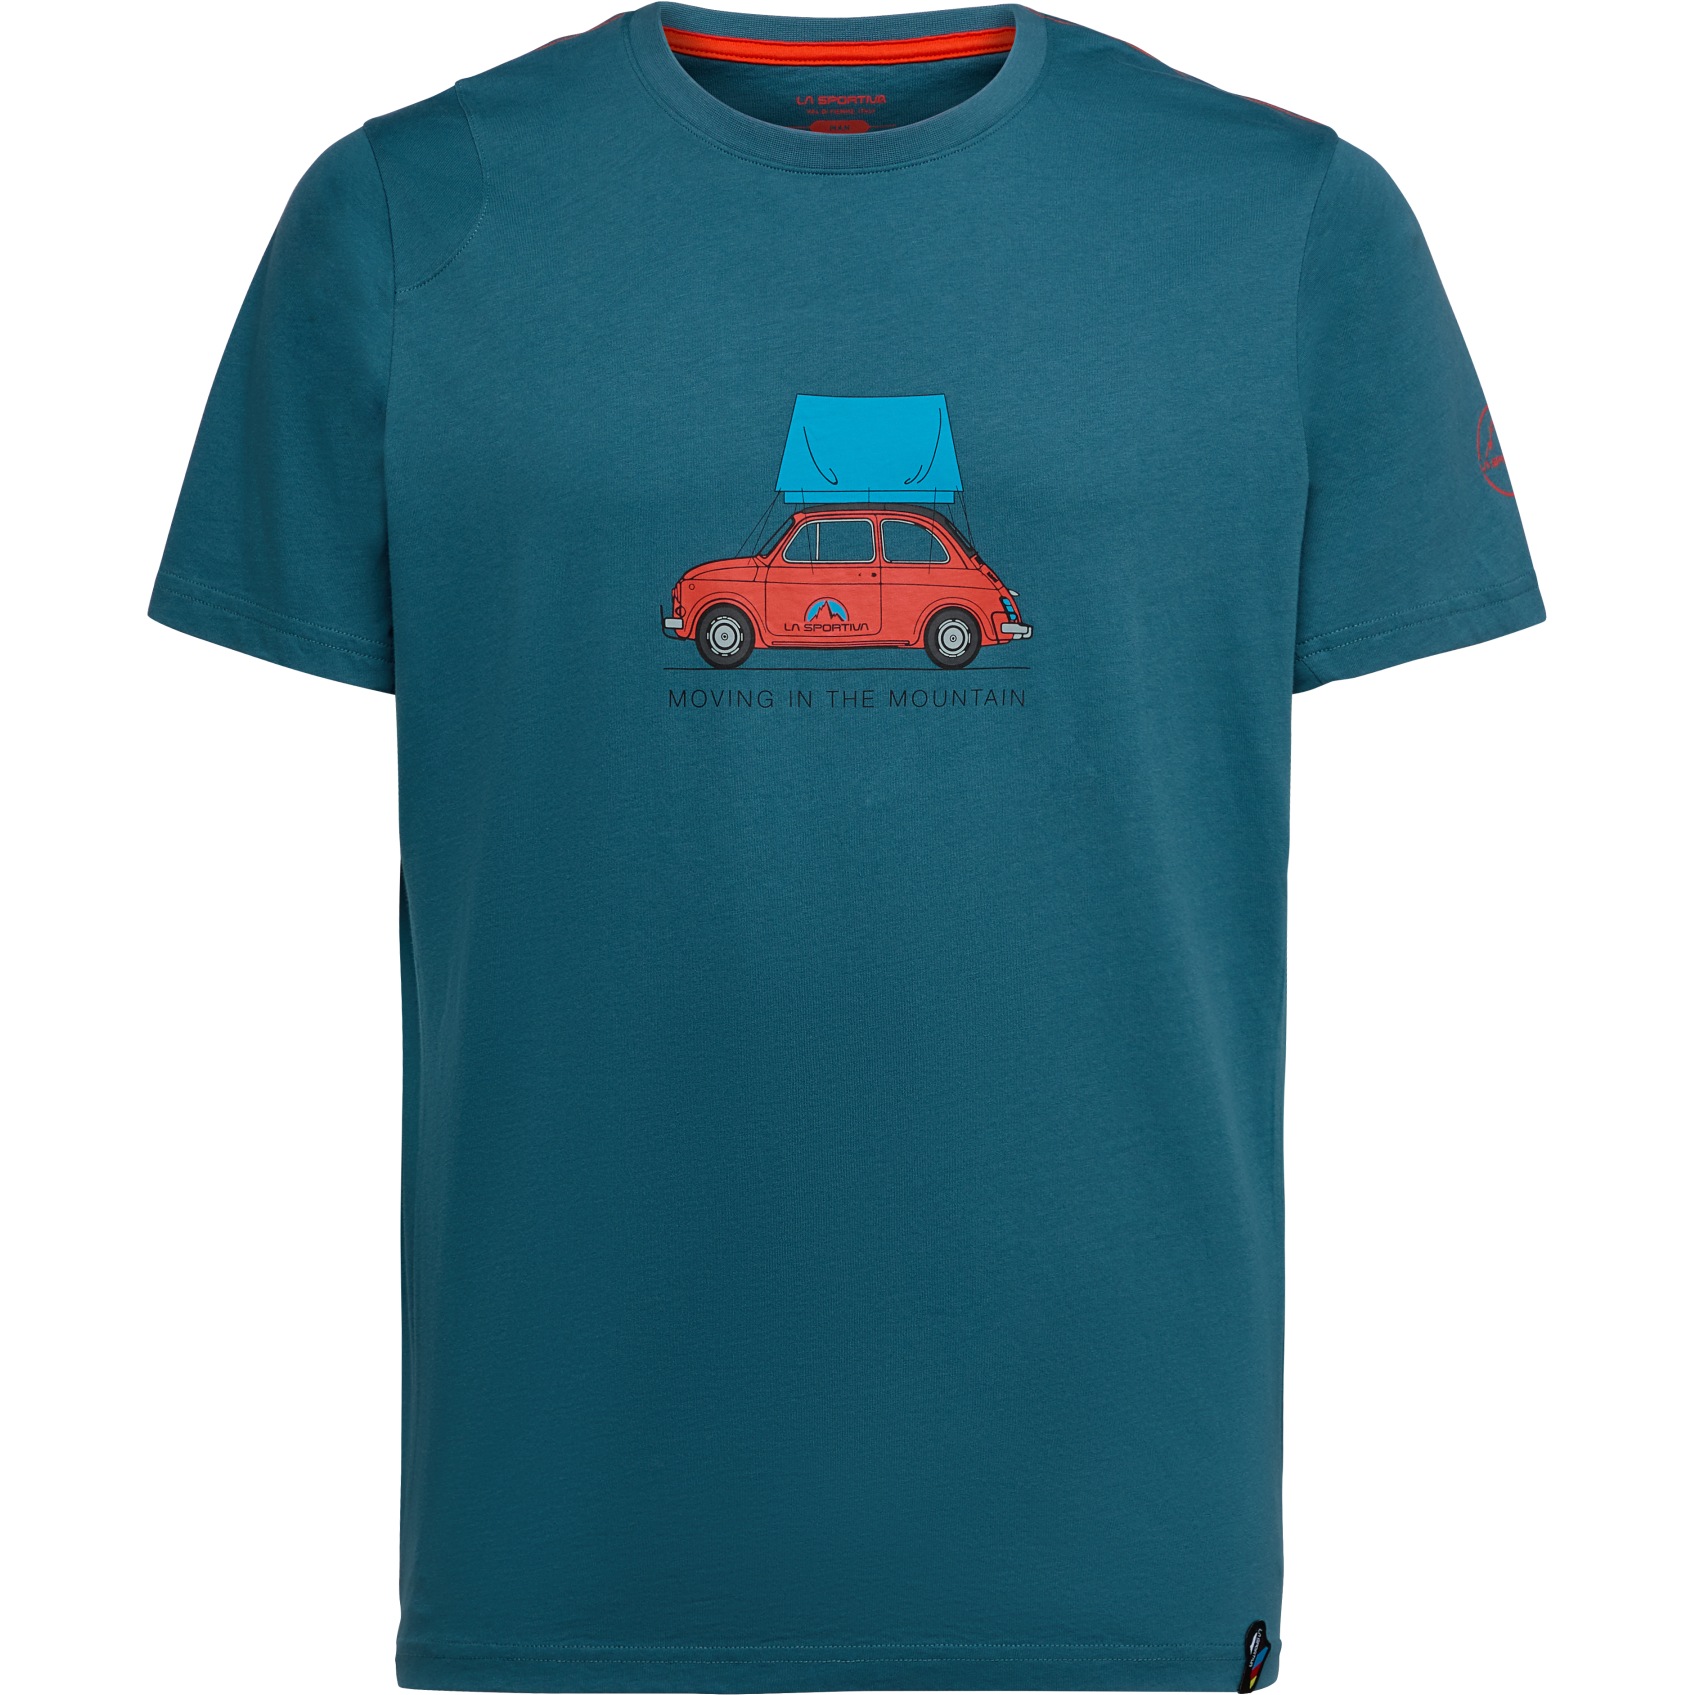 Produktbild von La Sportiva Cinquecento T-Shirt Herren - Hurricane